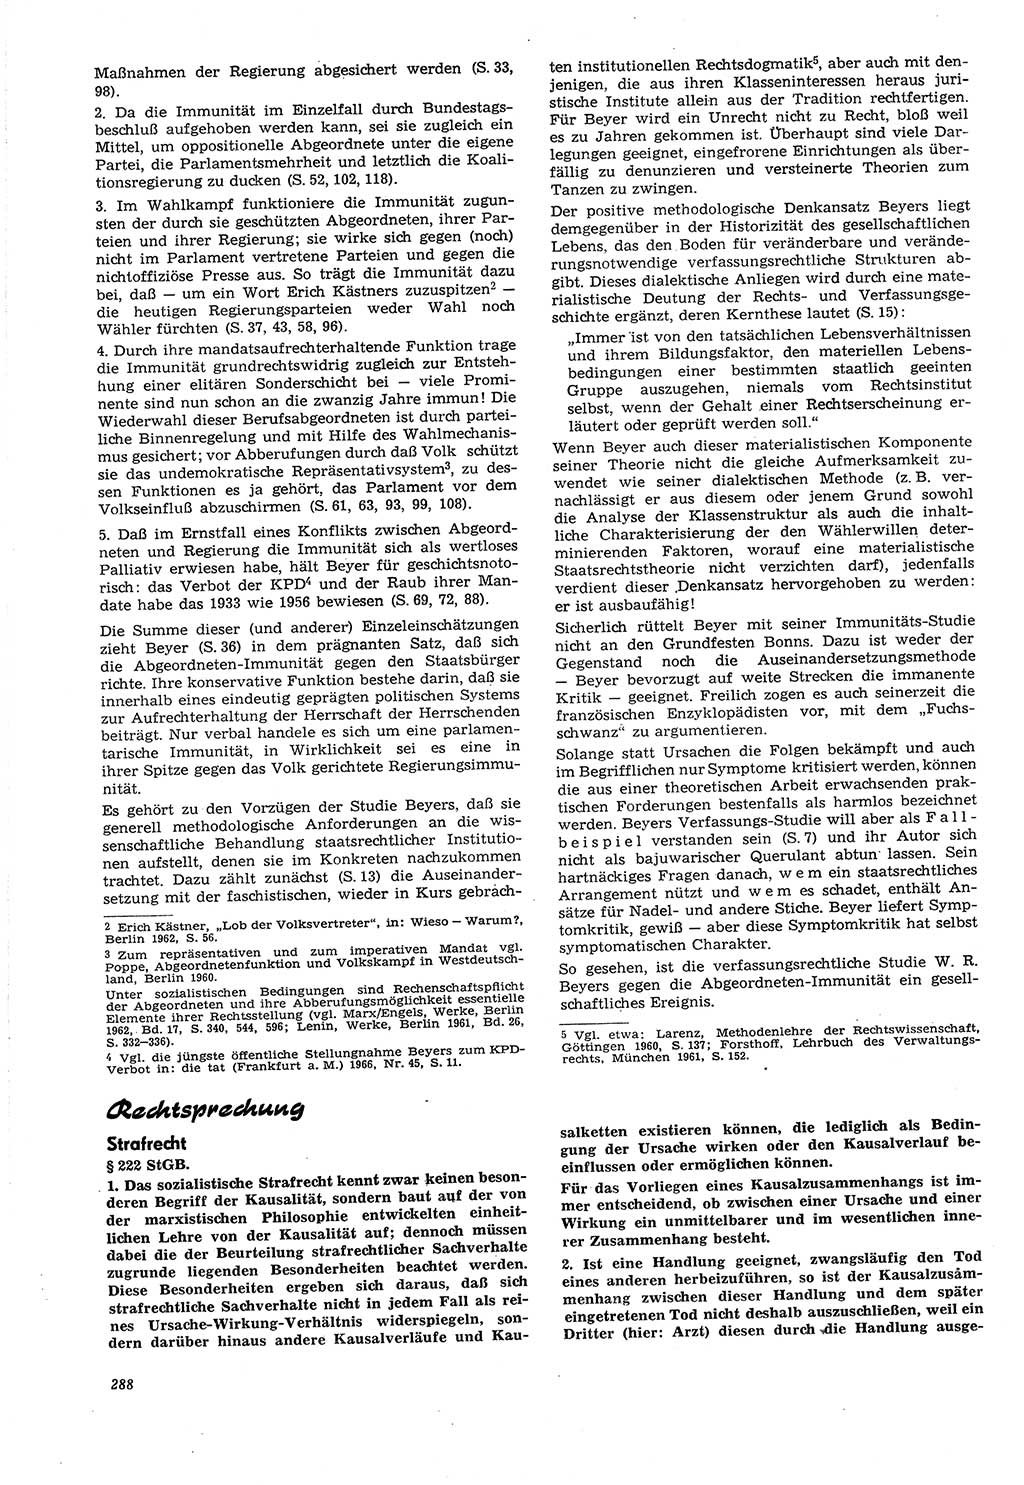 Neue Justiz (NJ), Zeitschrift für Recht und Rechtswissenschaft [Deutsche Demokratische Republik (DDR)], 21. Jahrgang 1967, Seite 288 (NJ DDR 1967, S. 288)